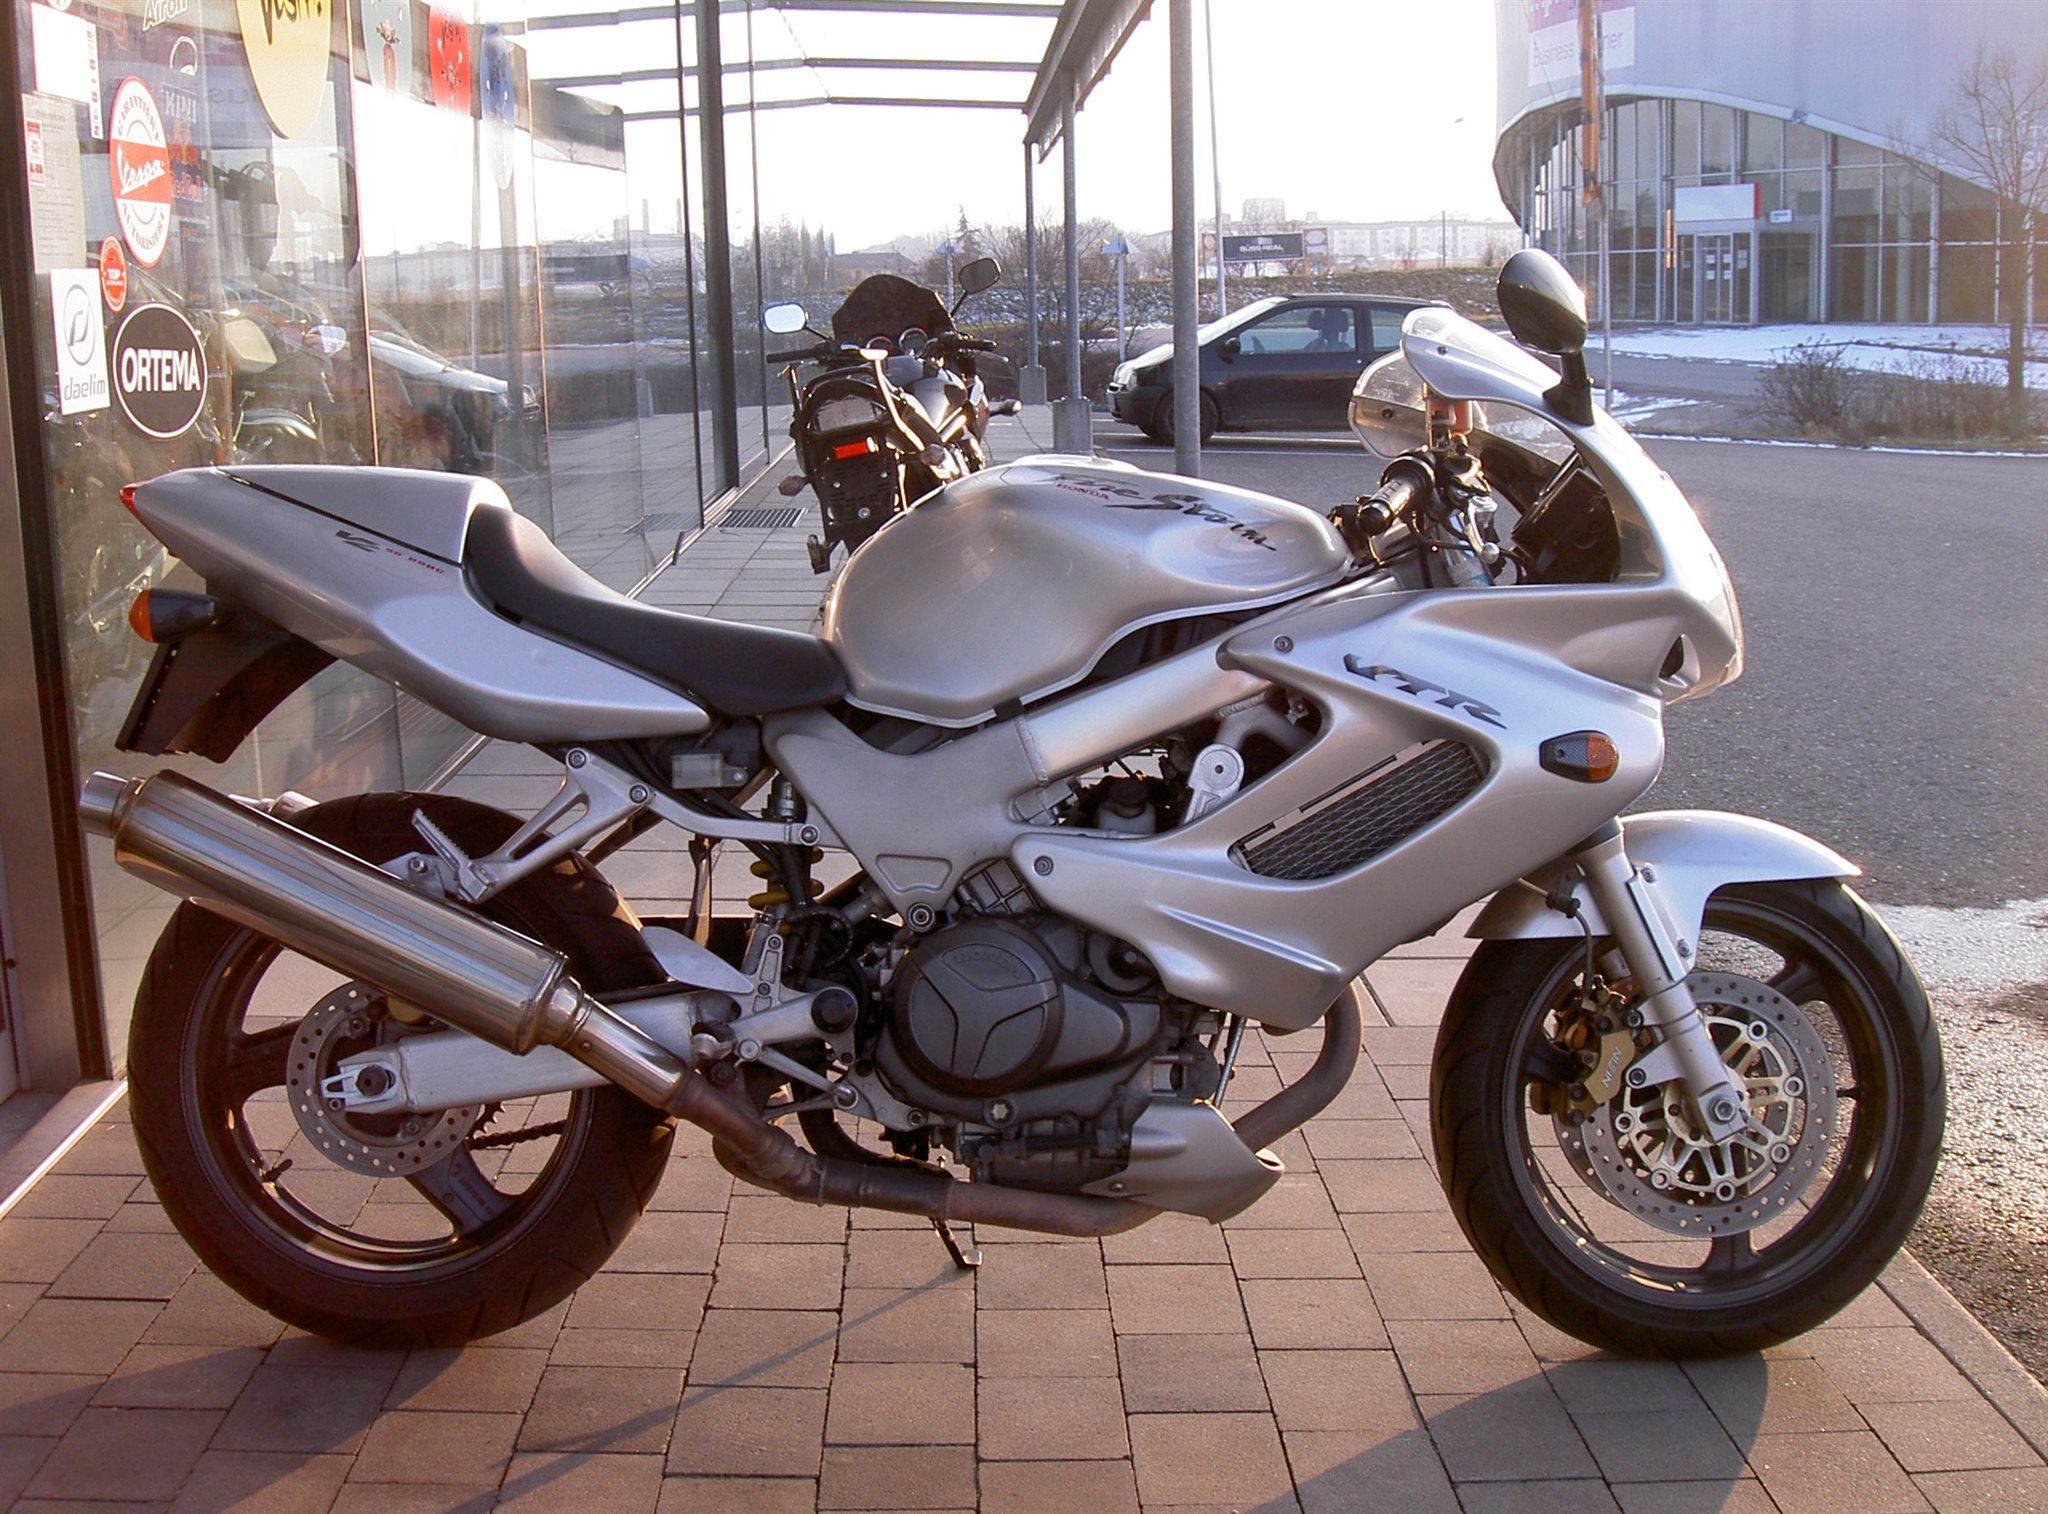 Мотоцикл honda vtr 1000 f firestorm 2001 цена, фото, характеристики, обзор, сравнение на базамото